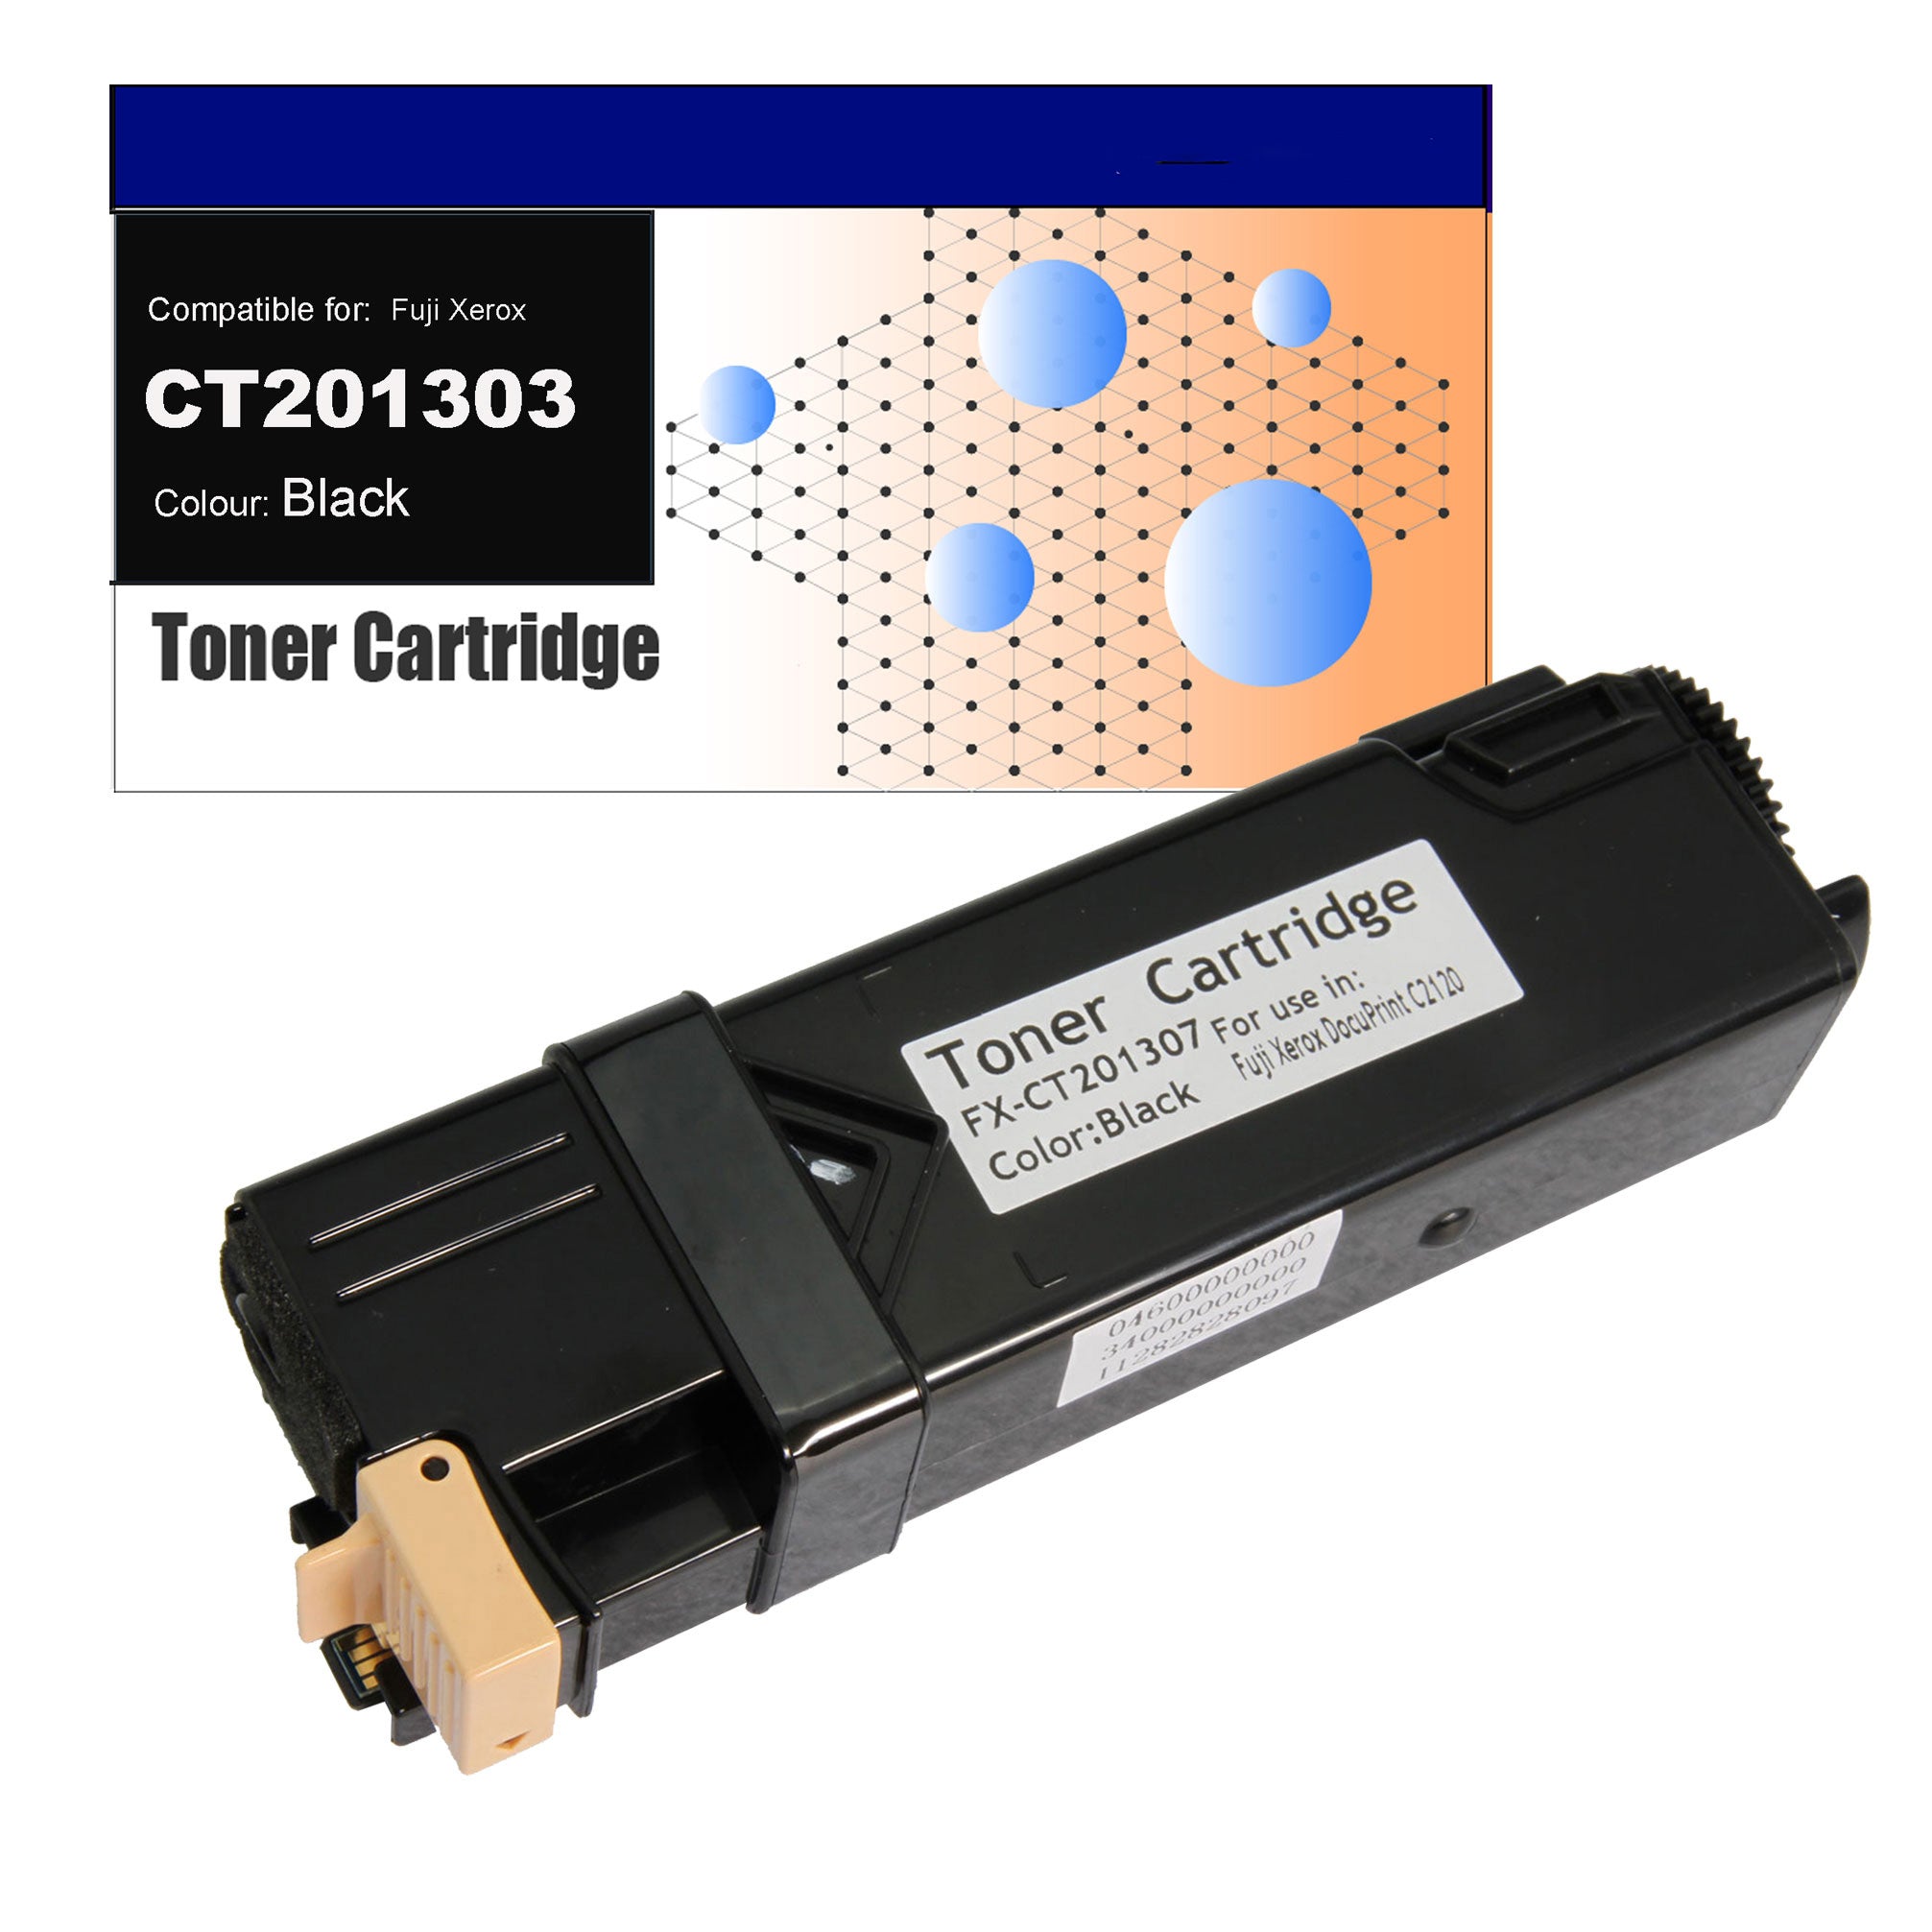 Compatible Toner for Fuji Xerox CT201303 (C2120) Black Toner Cartridges